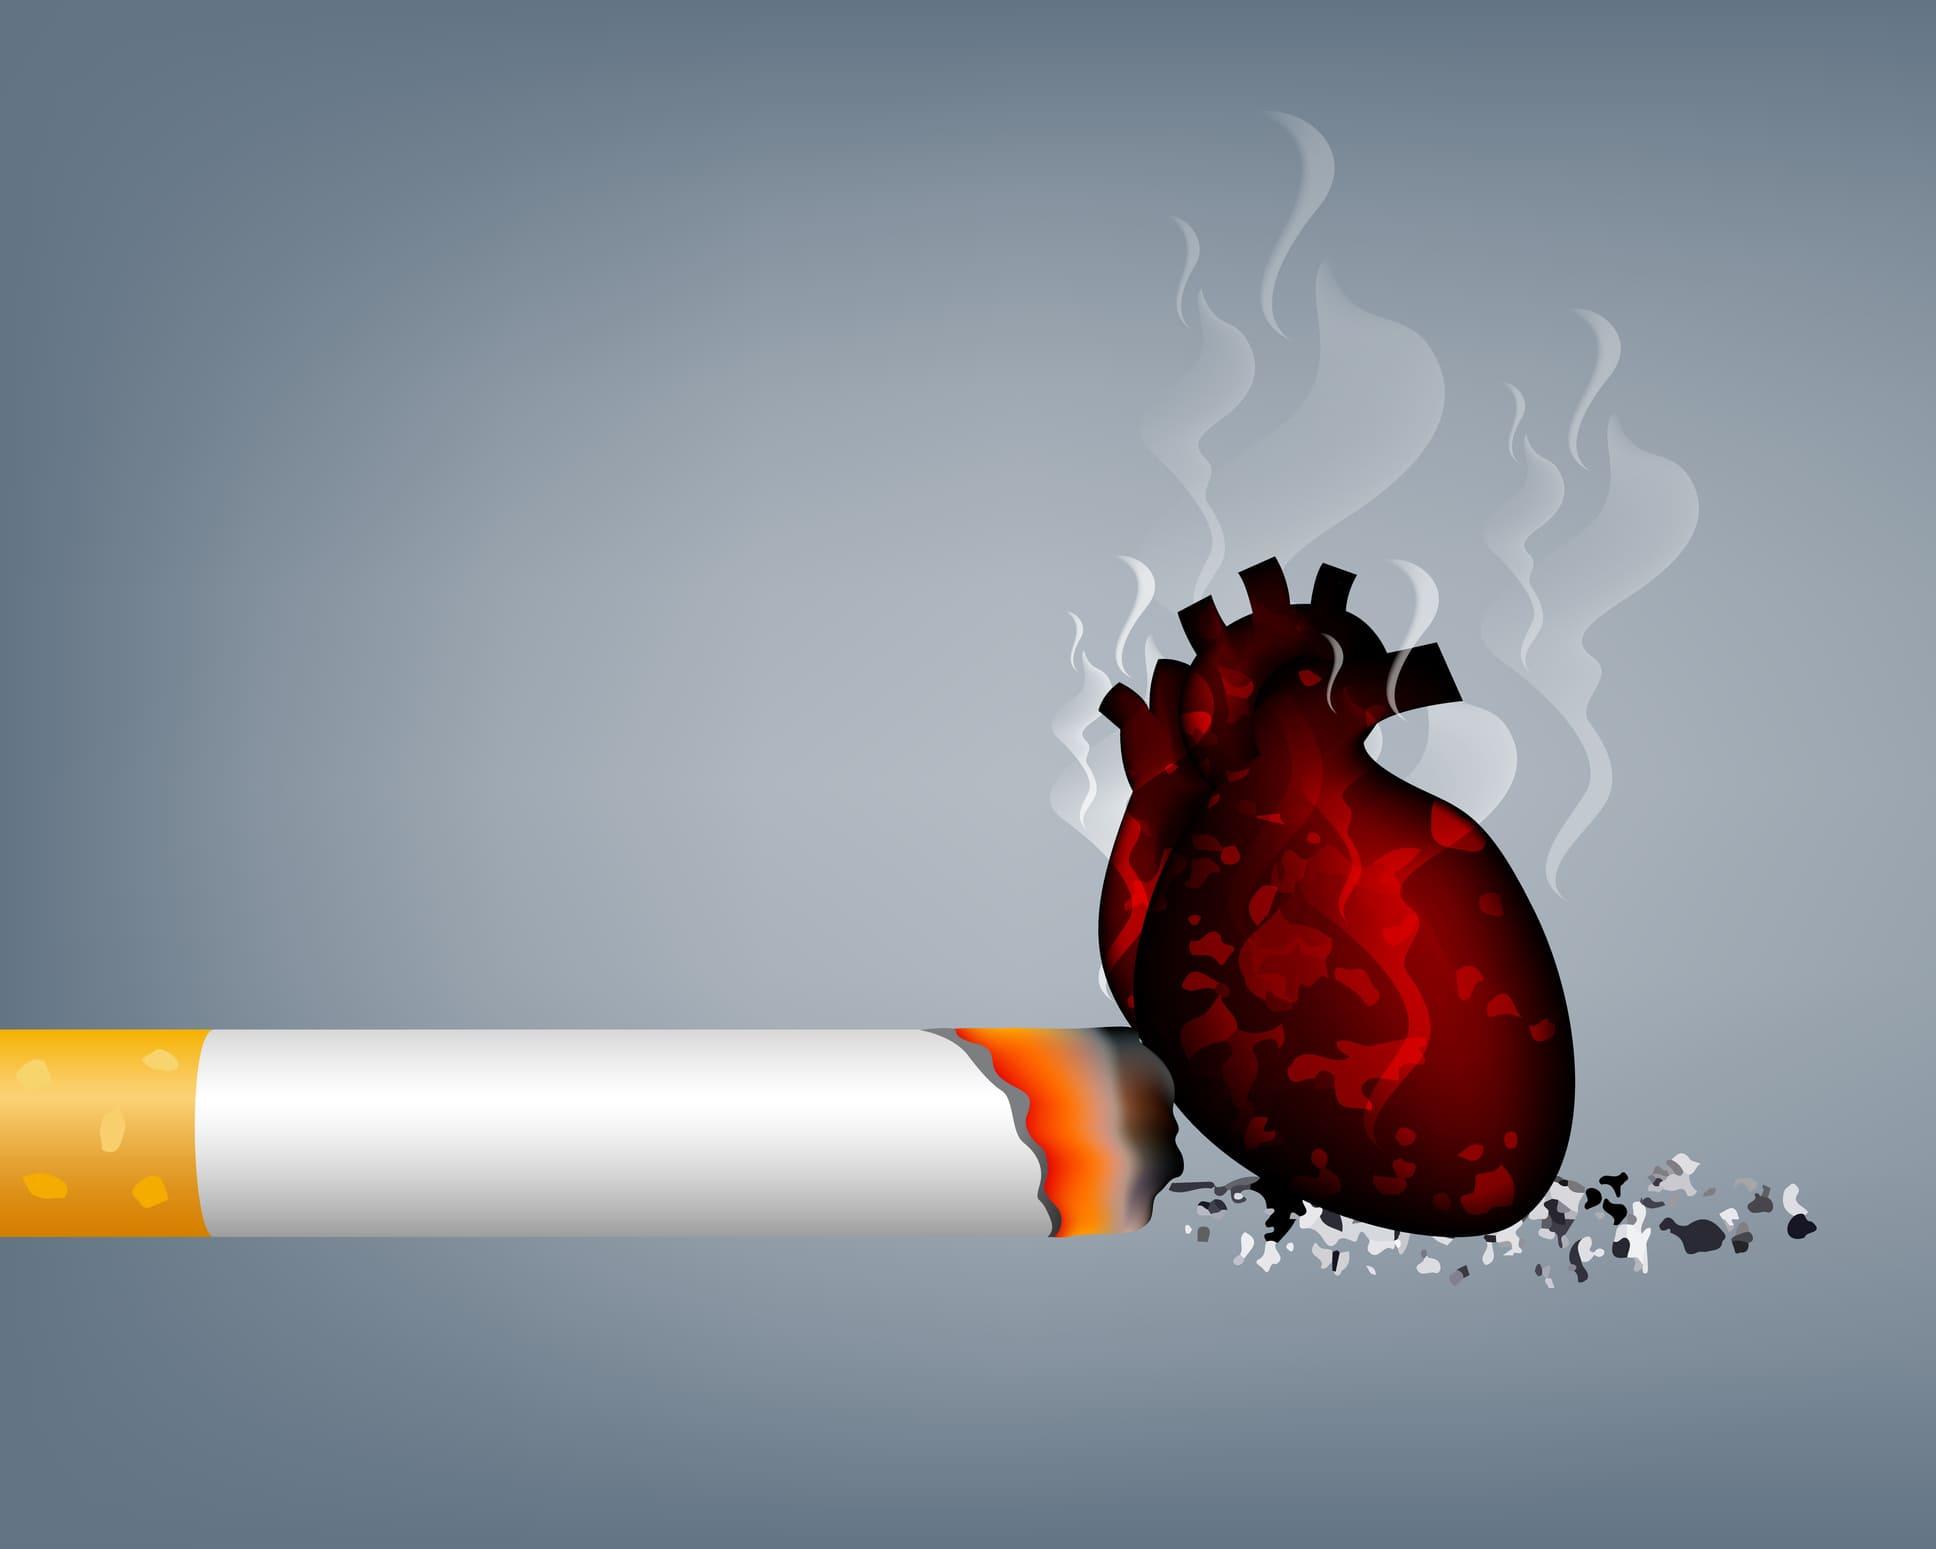 Zigarette sticht in das Herz